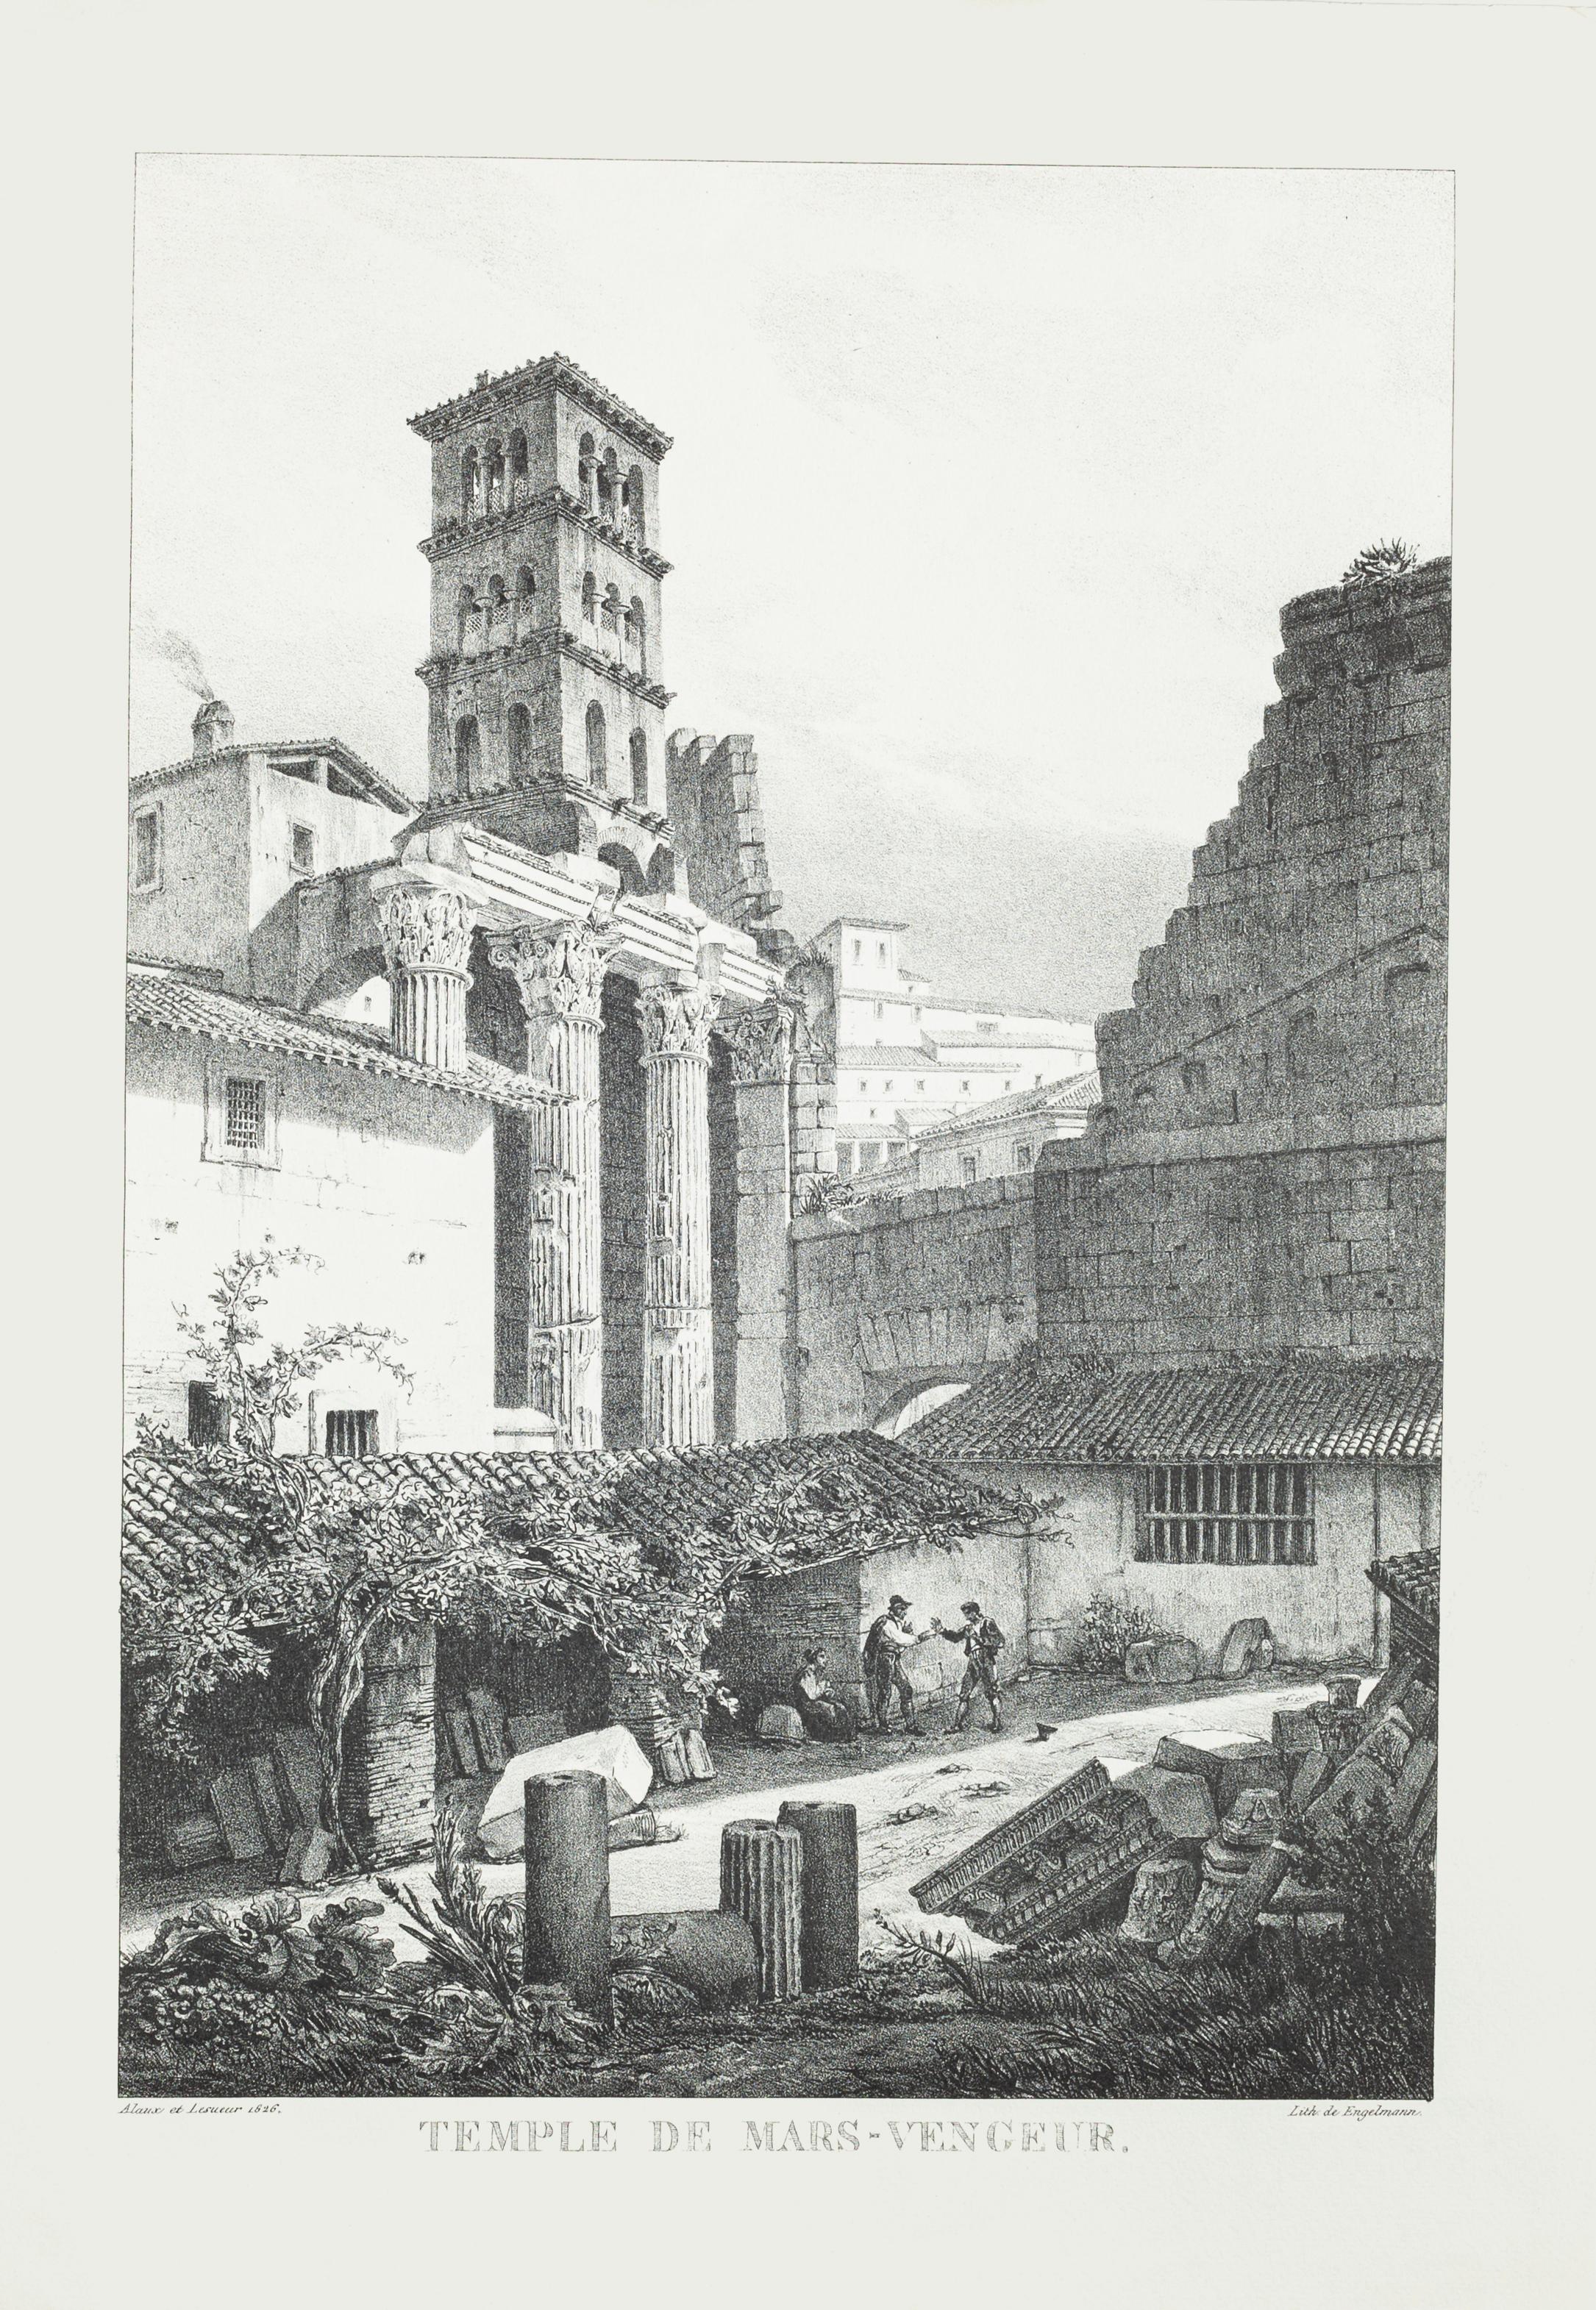 Temple de Mars est une oeuvre d'art en impression offset sur papier, réalisée par G. Engelmann en 1826, l'oeuvre est signée sur la plaque et datée.

En très bon état.

L'œuvre d'art représente le paysage romain du temple de Mars. Le temple de Mars